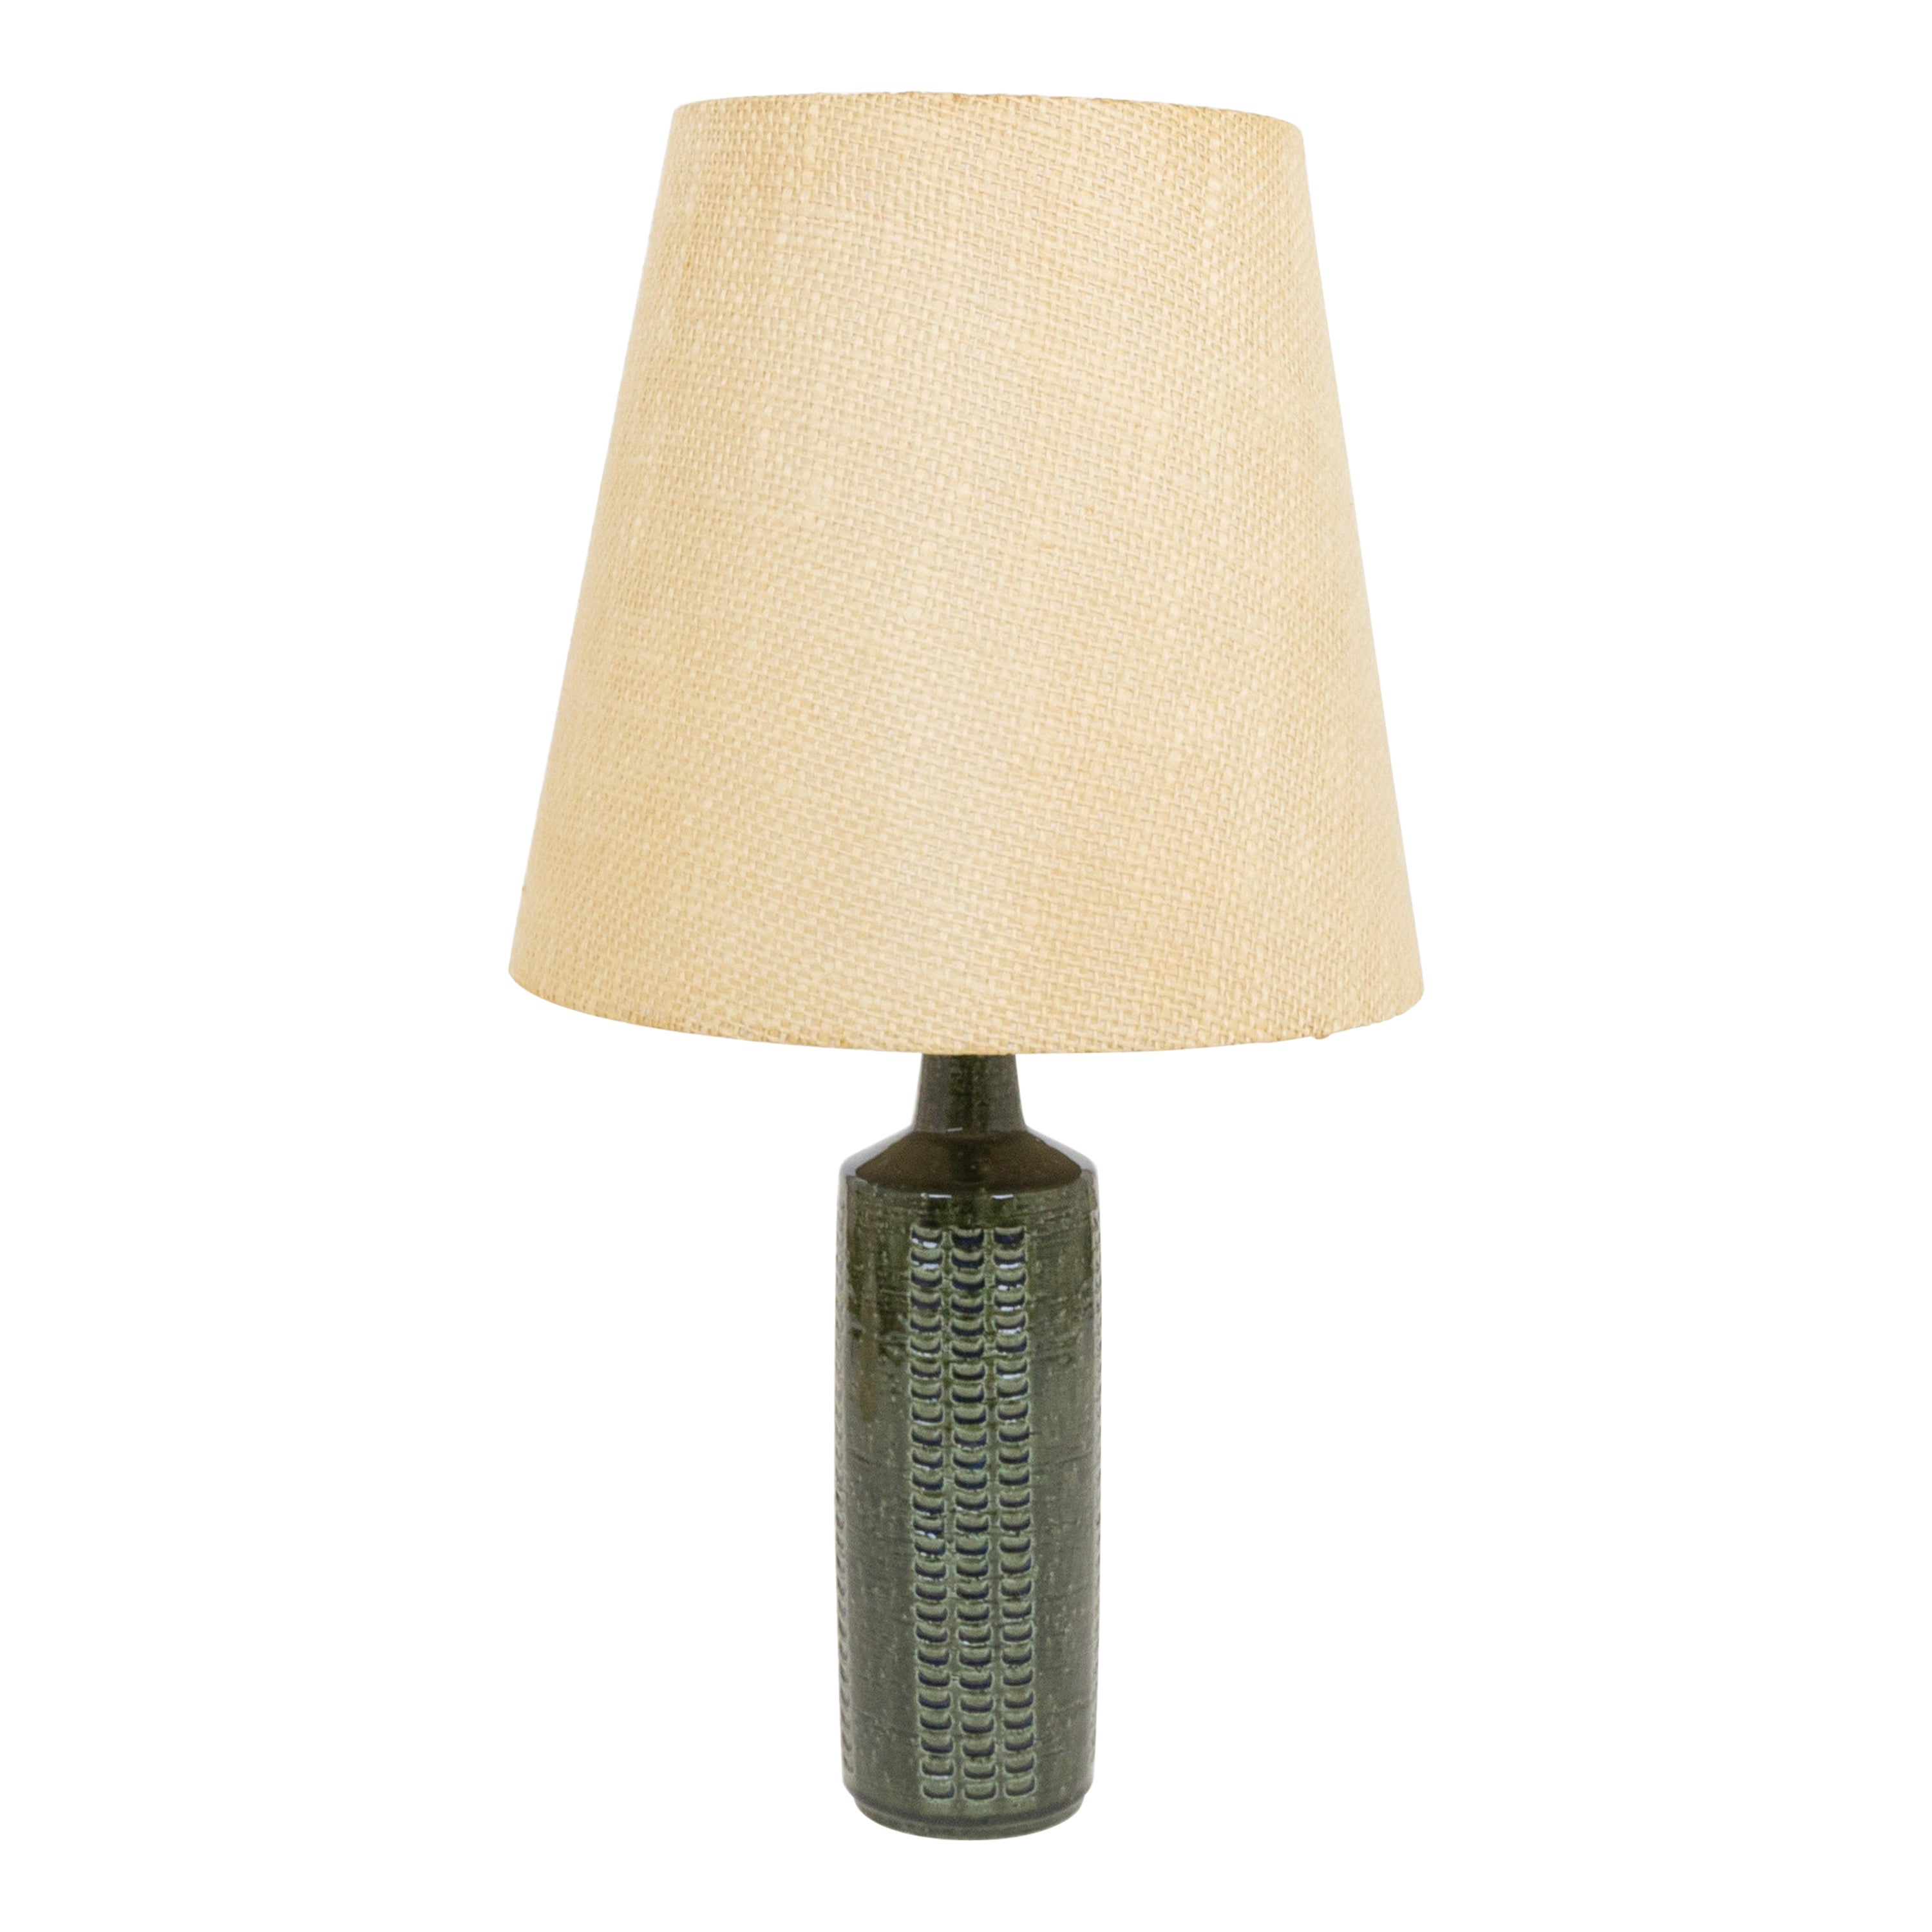 Bottle Green DL/27 table lamp by Linnemann-Schmidt for Palshus, 1960s For Sale